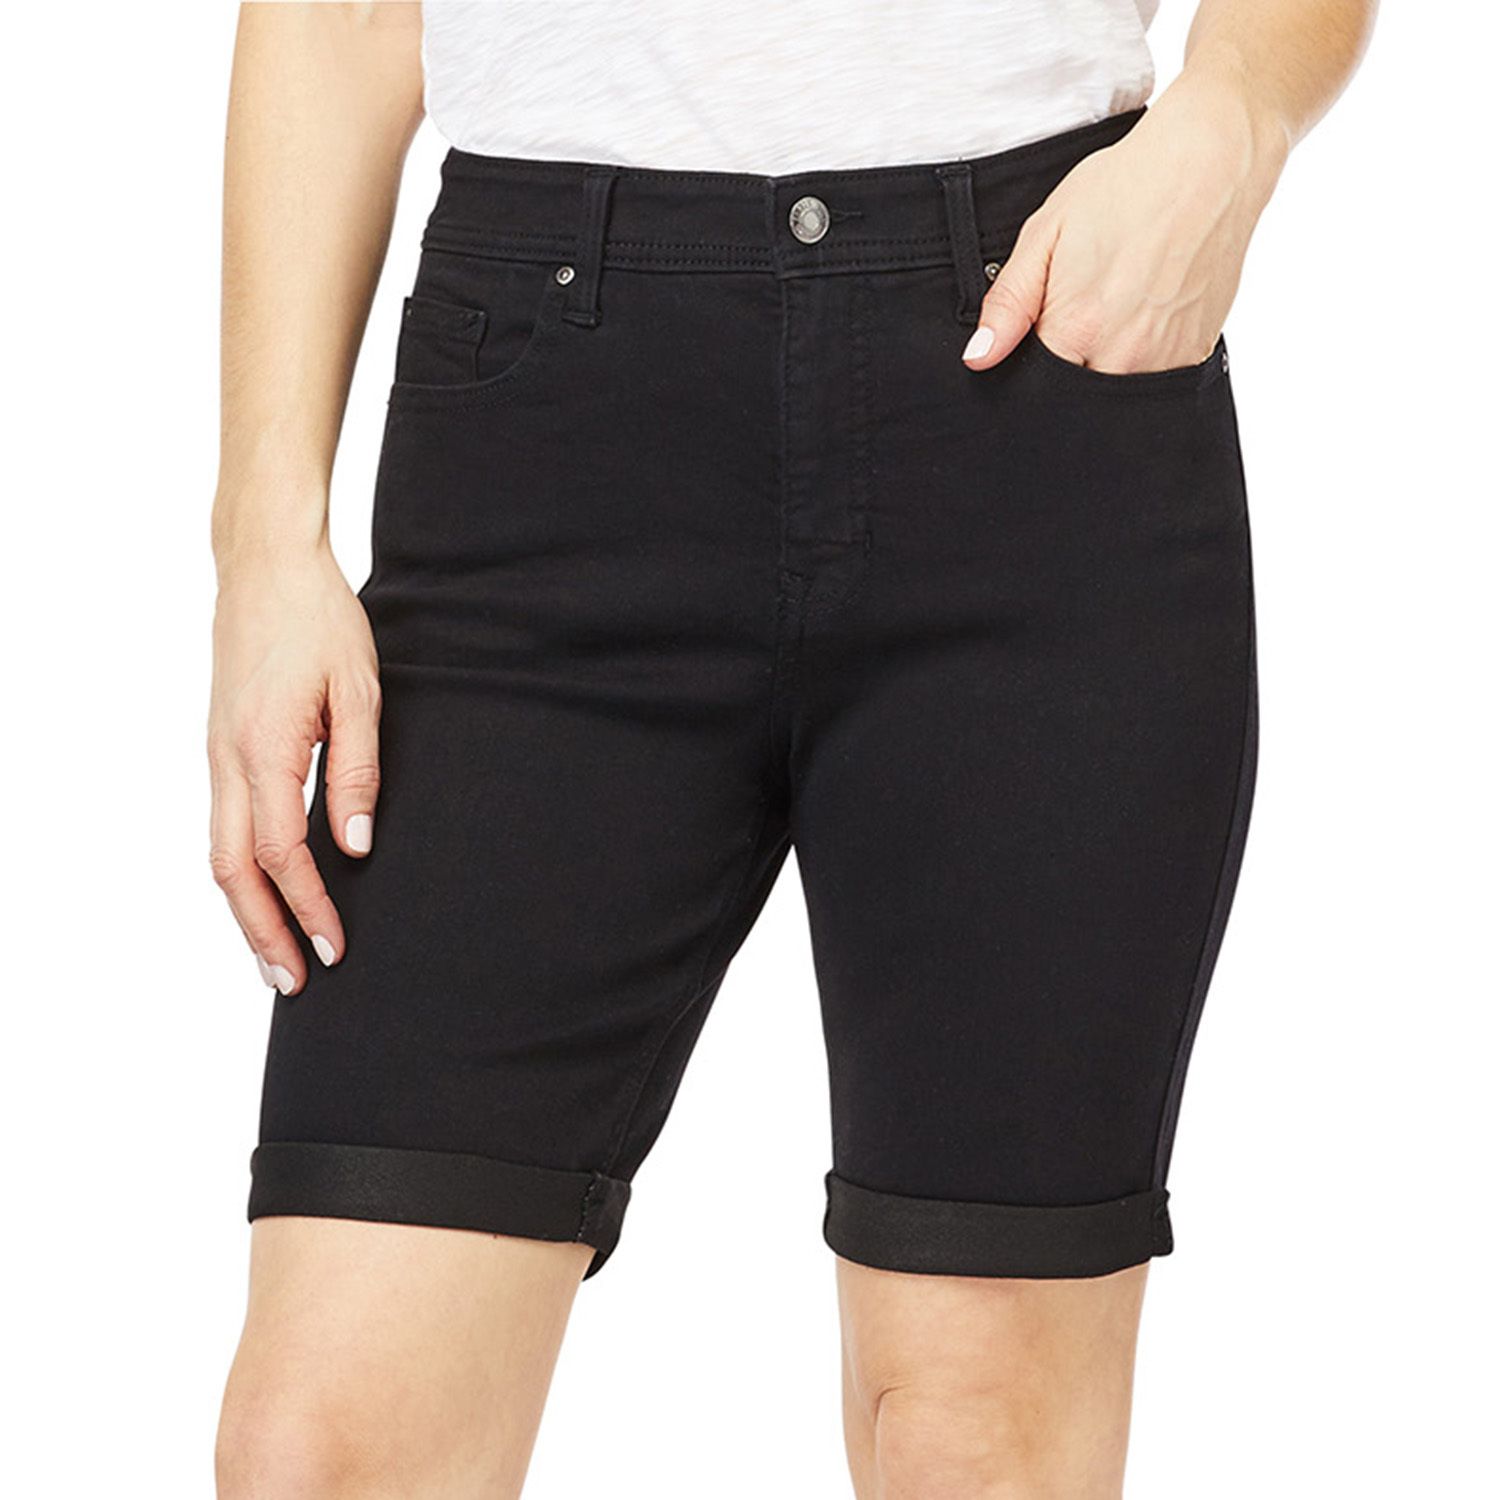 soft denim shorts womens